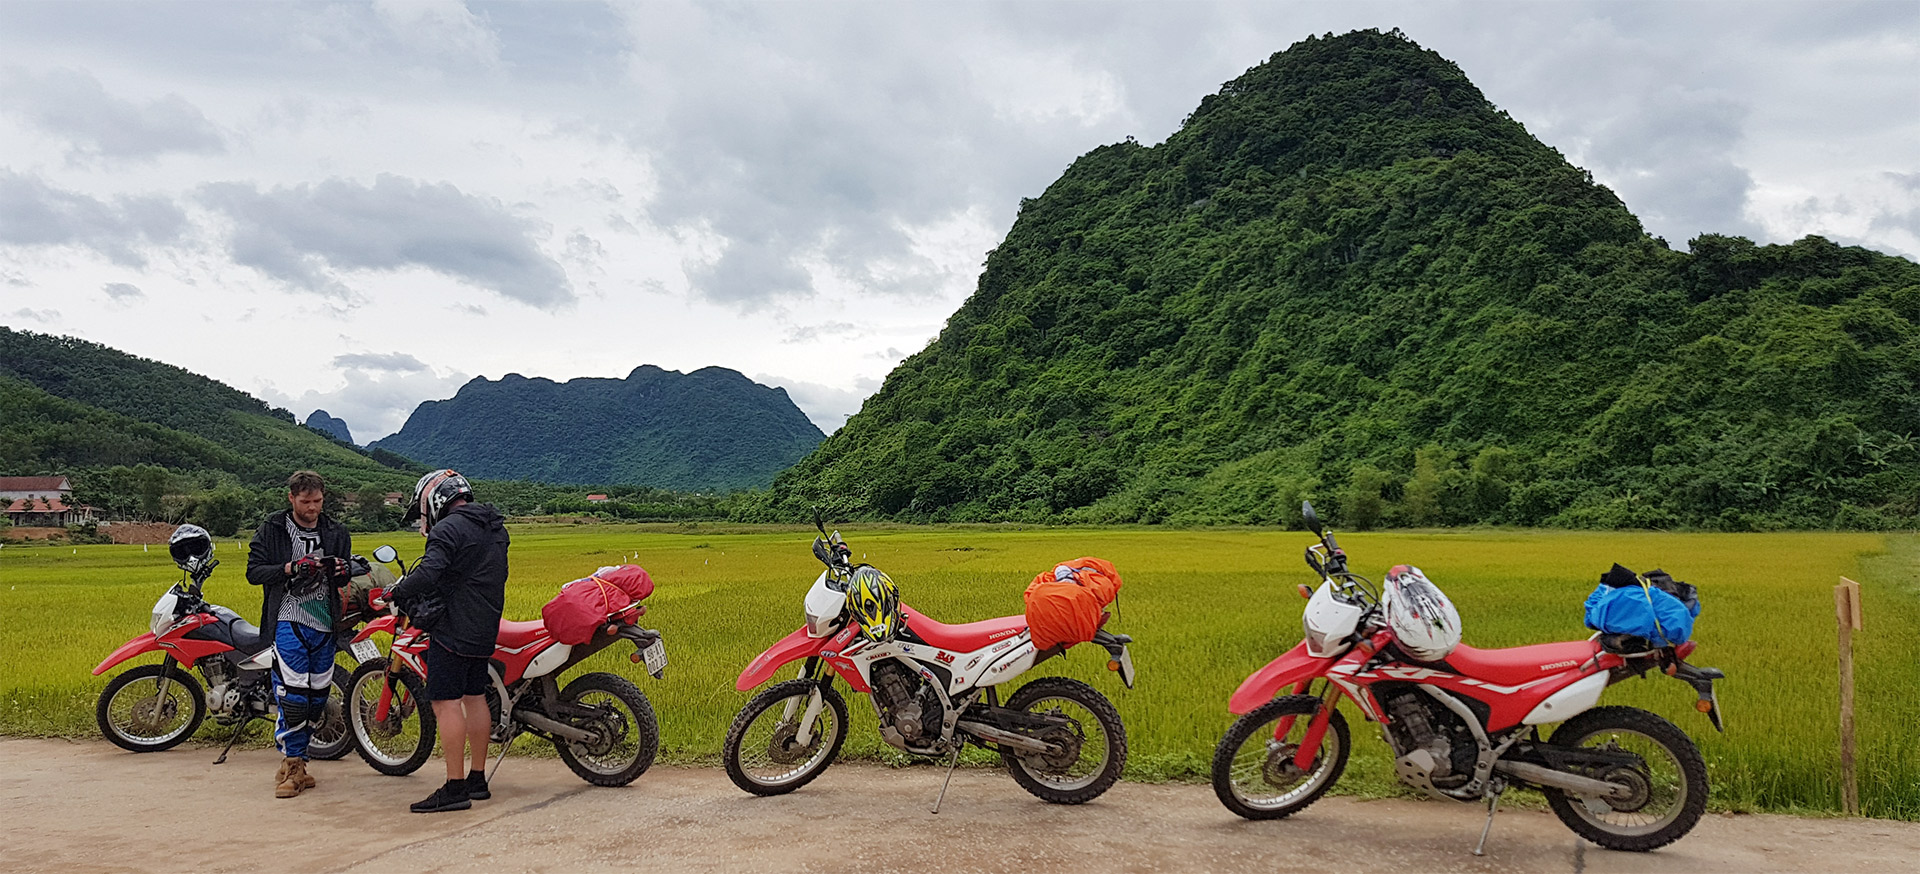 11 Days Hanoi Motorbike Tour To Laos